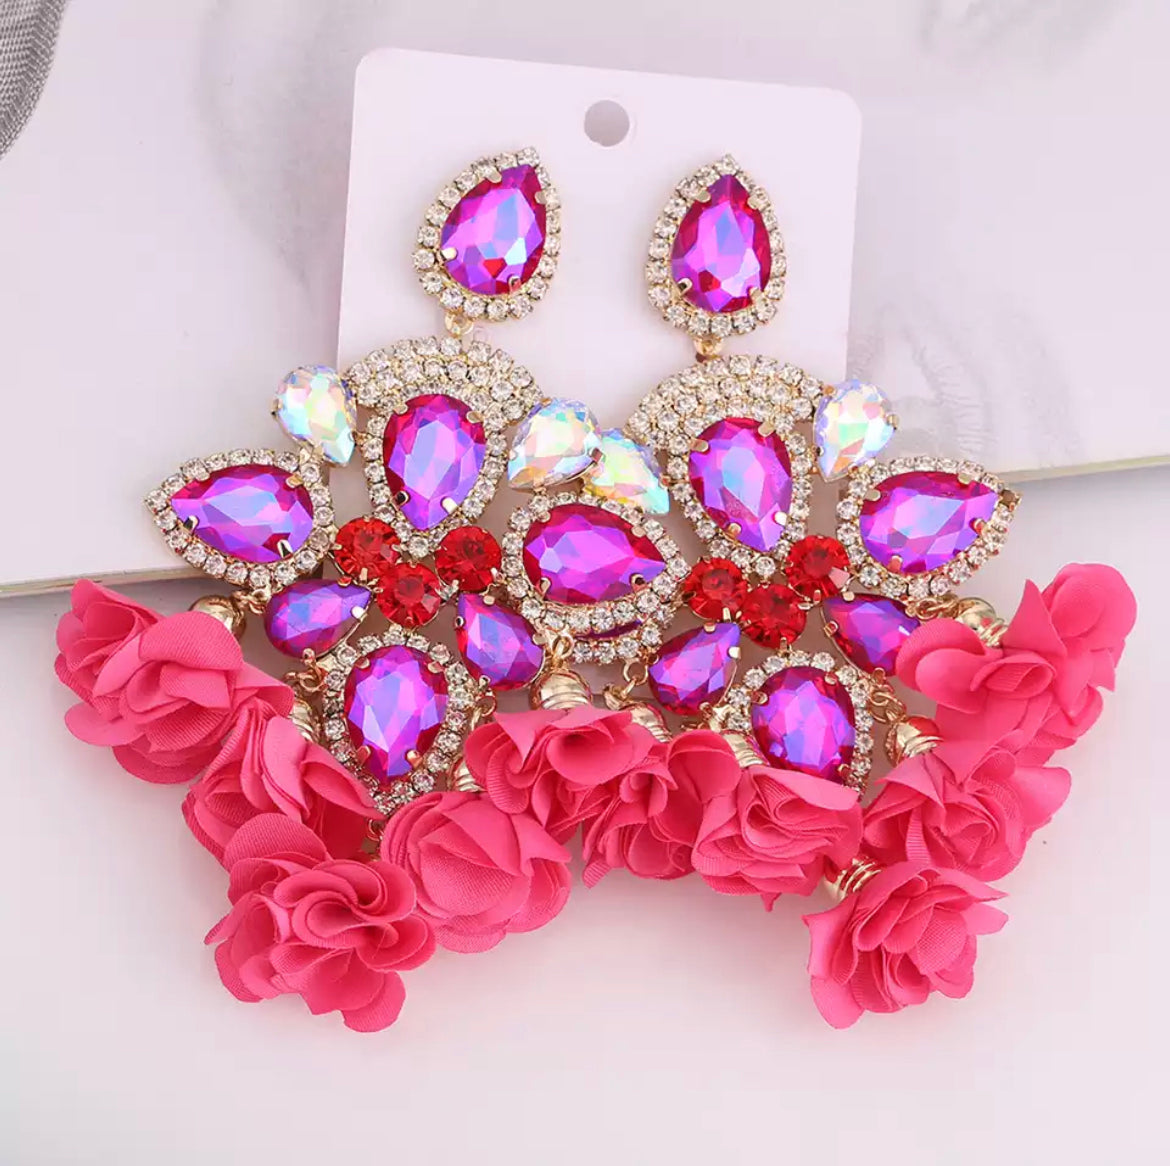 Pink clip on earrings